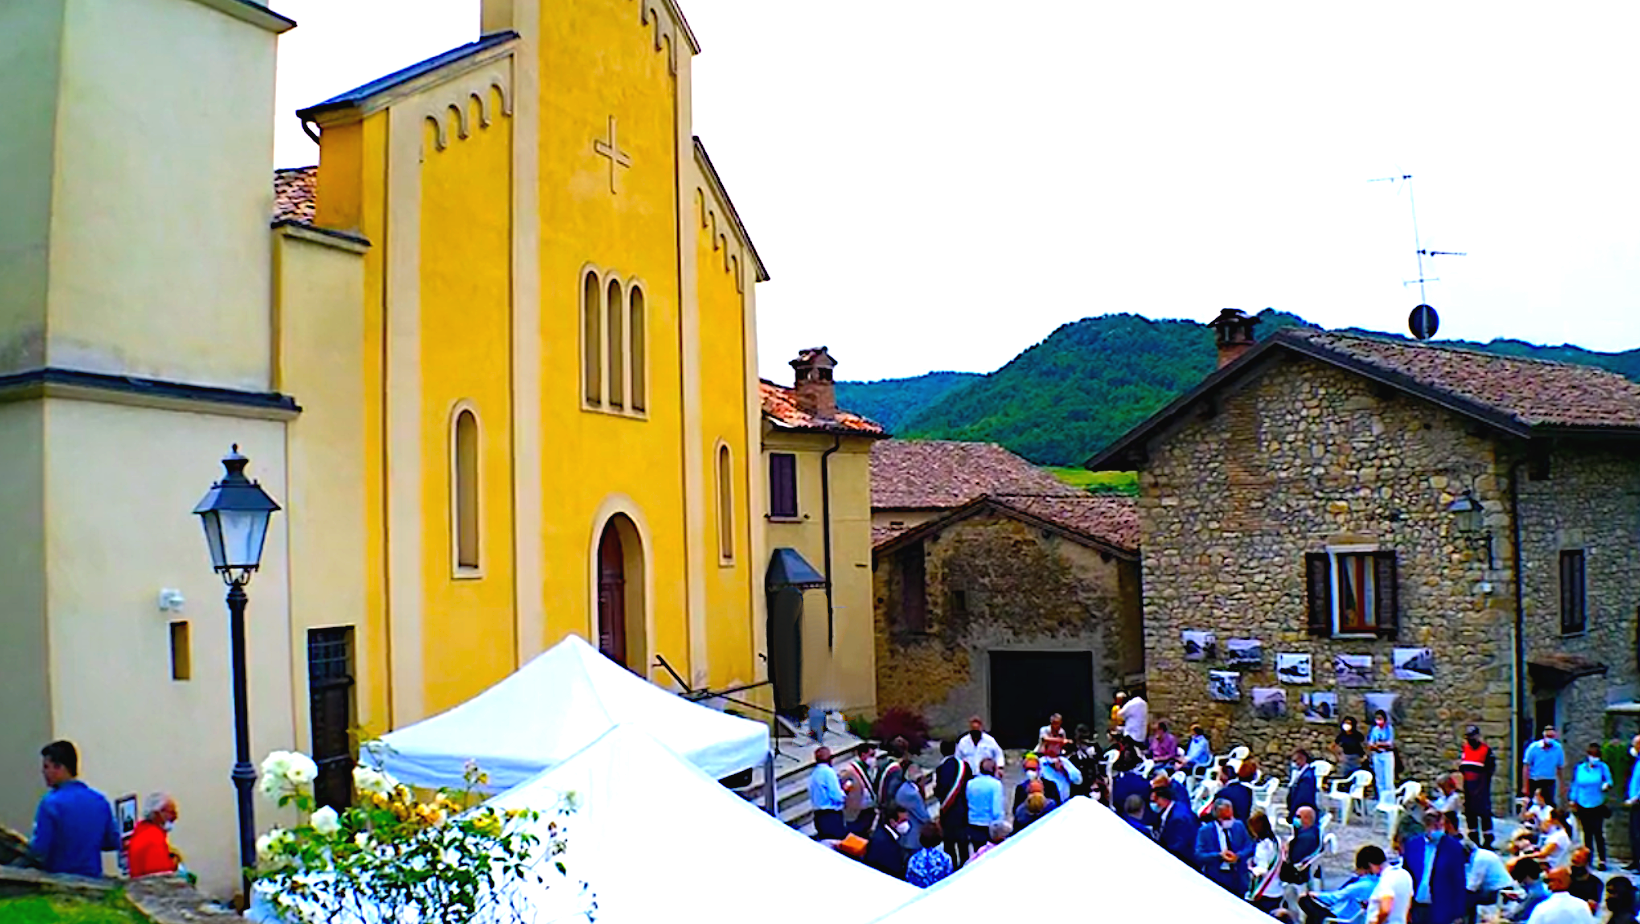 Festa di San Bartolomeo a Bagnaria: cena sotto le stelle, sapori e dj set